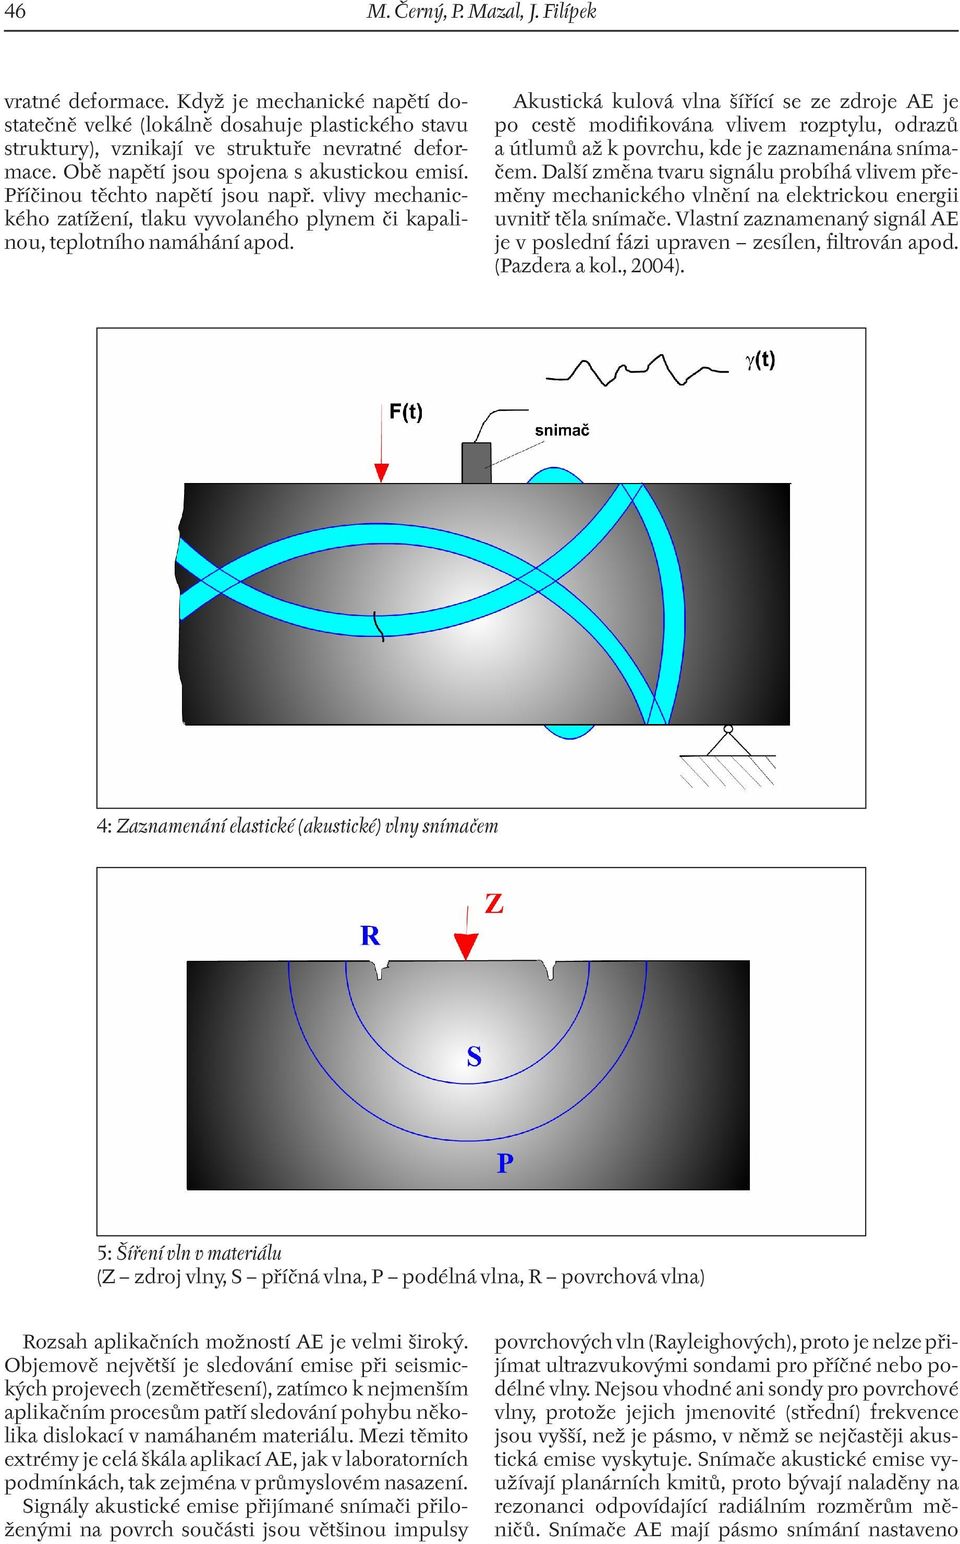 Akustická kulová vlna šířící se ze zdroje AE je po cestě modifikována vlivem rozptylu, odrazů a útlumů až k povrchu, kde je zaznamenána snímačem.